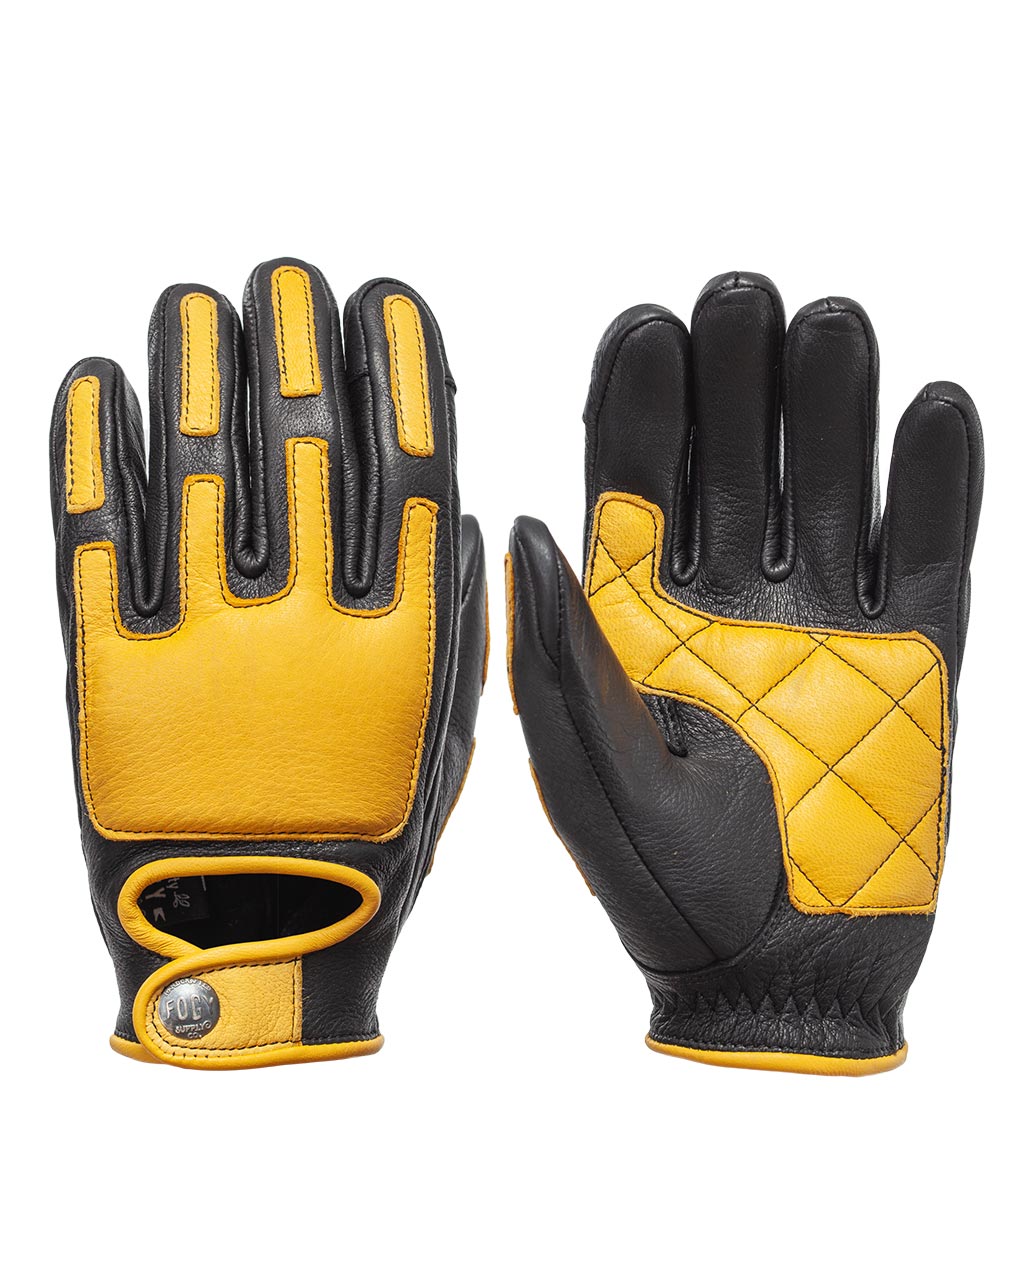 VMX Gloves